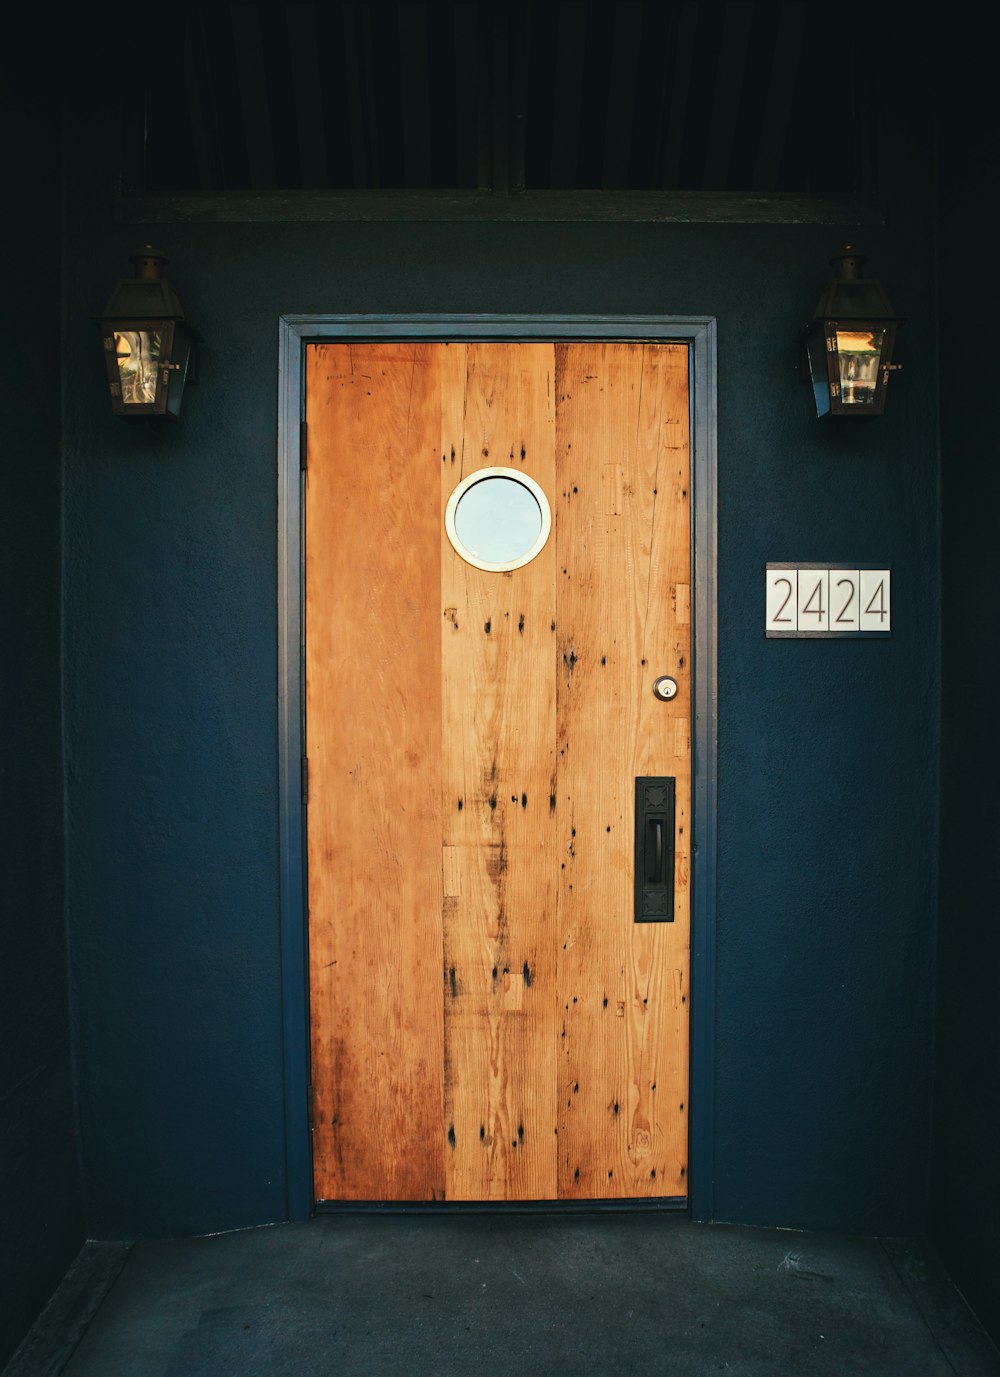 黒と白の壁掛け装置を備えた茶色の木製ドア